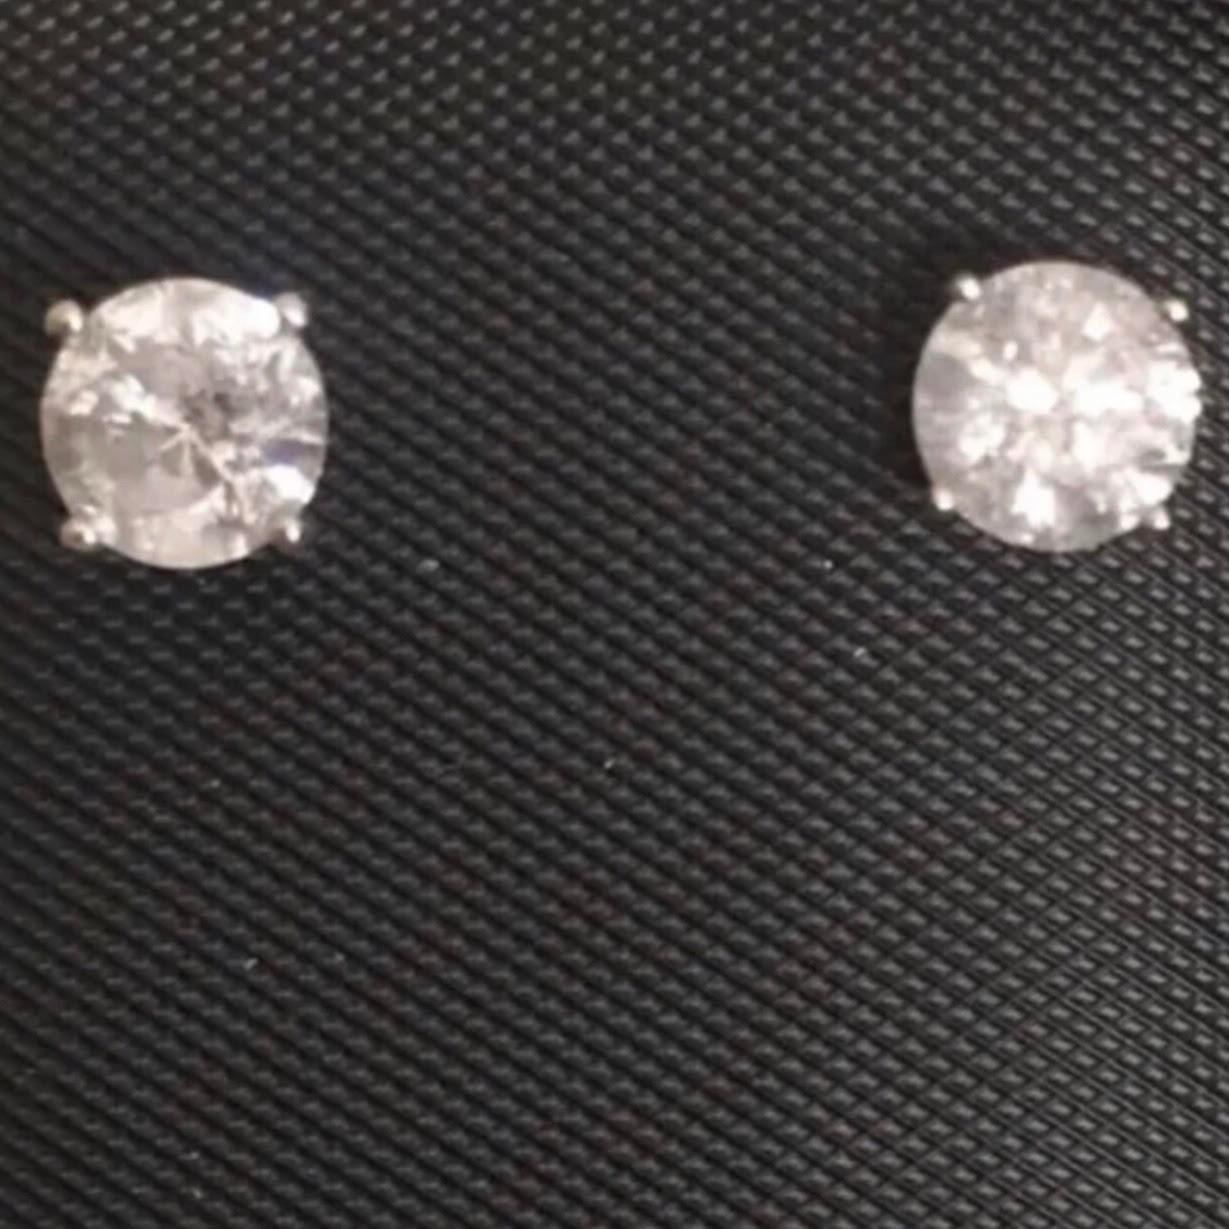 Boucles d'oreilles classiques en or blanc 14 carats et diamant solitaire de 1 carat. Paire de diamants ronds et brillants d'origine naturelle pesant environ 1,02 carat sont sertis dans ces clous d'oreilles en forme de panier en 14 carats.

Les